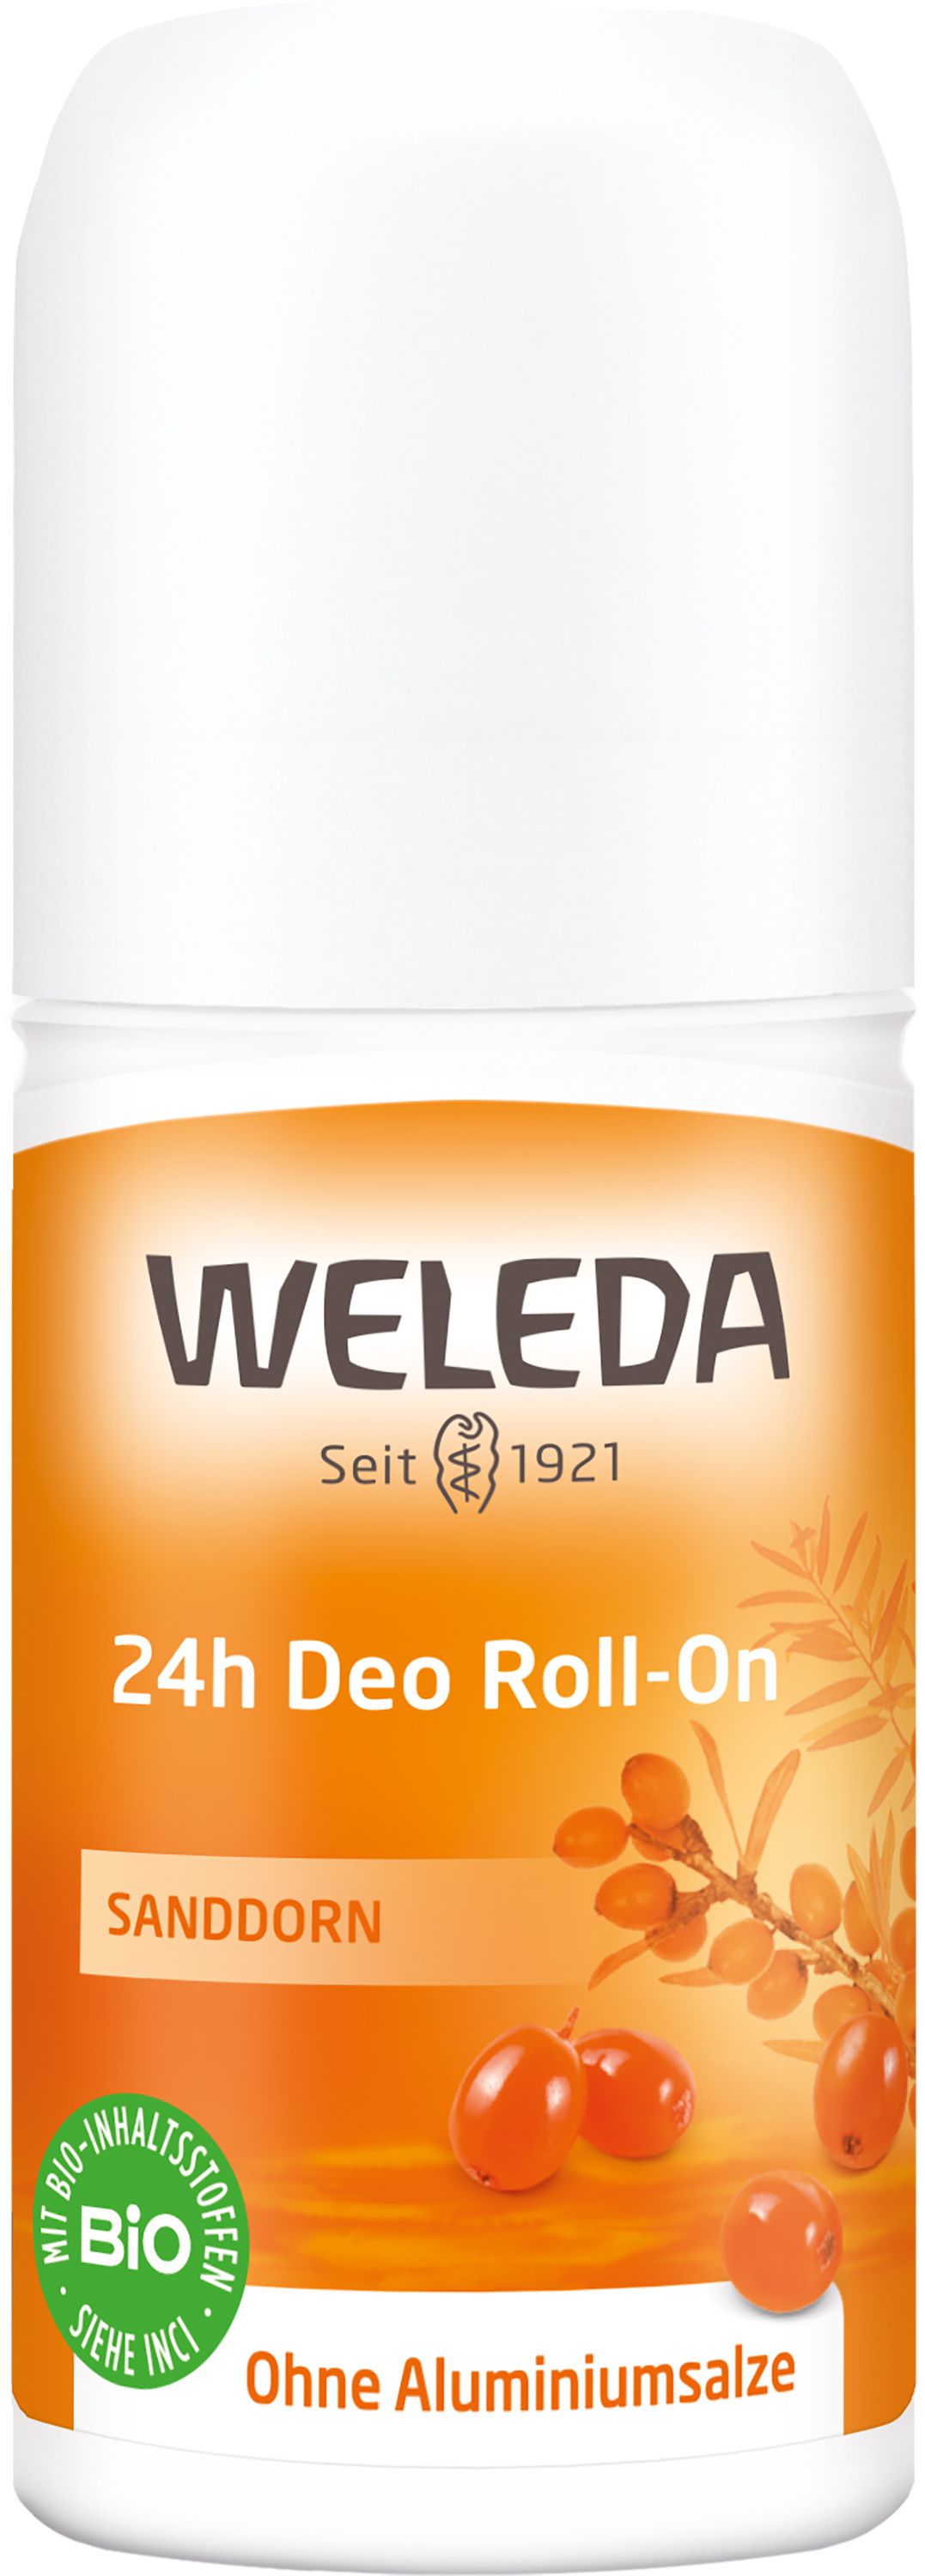 WELEDA Sanddorn 24h Deo Roll-on